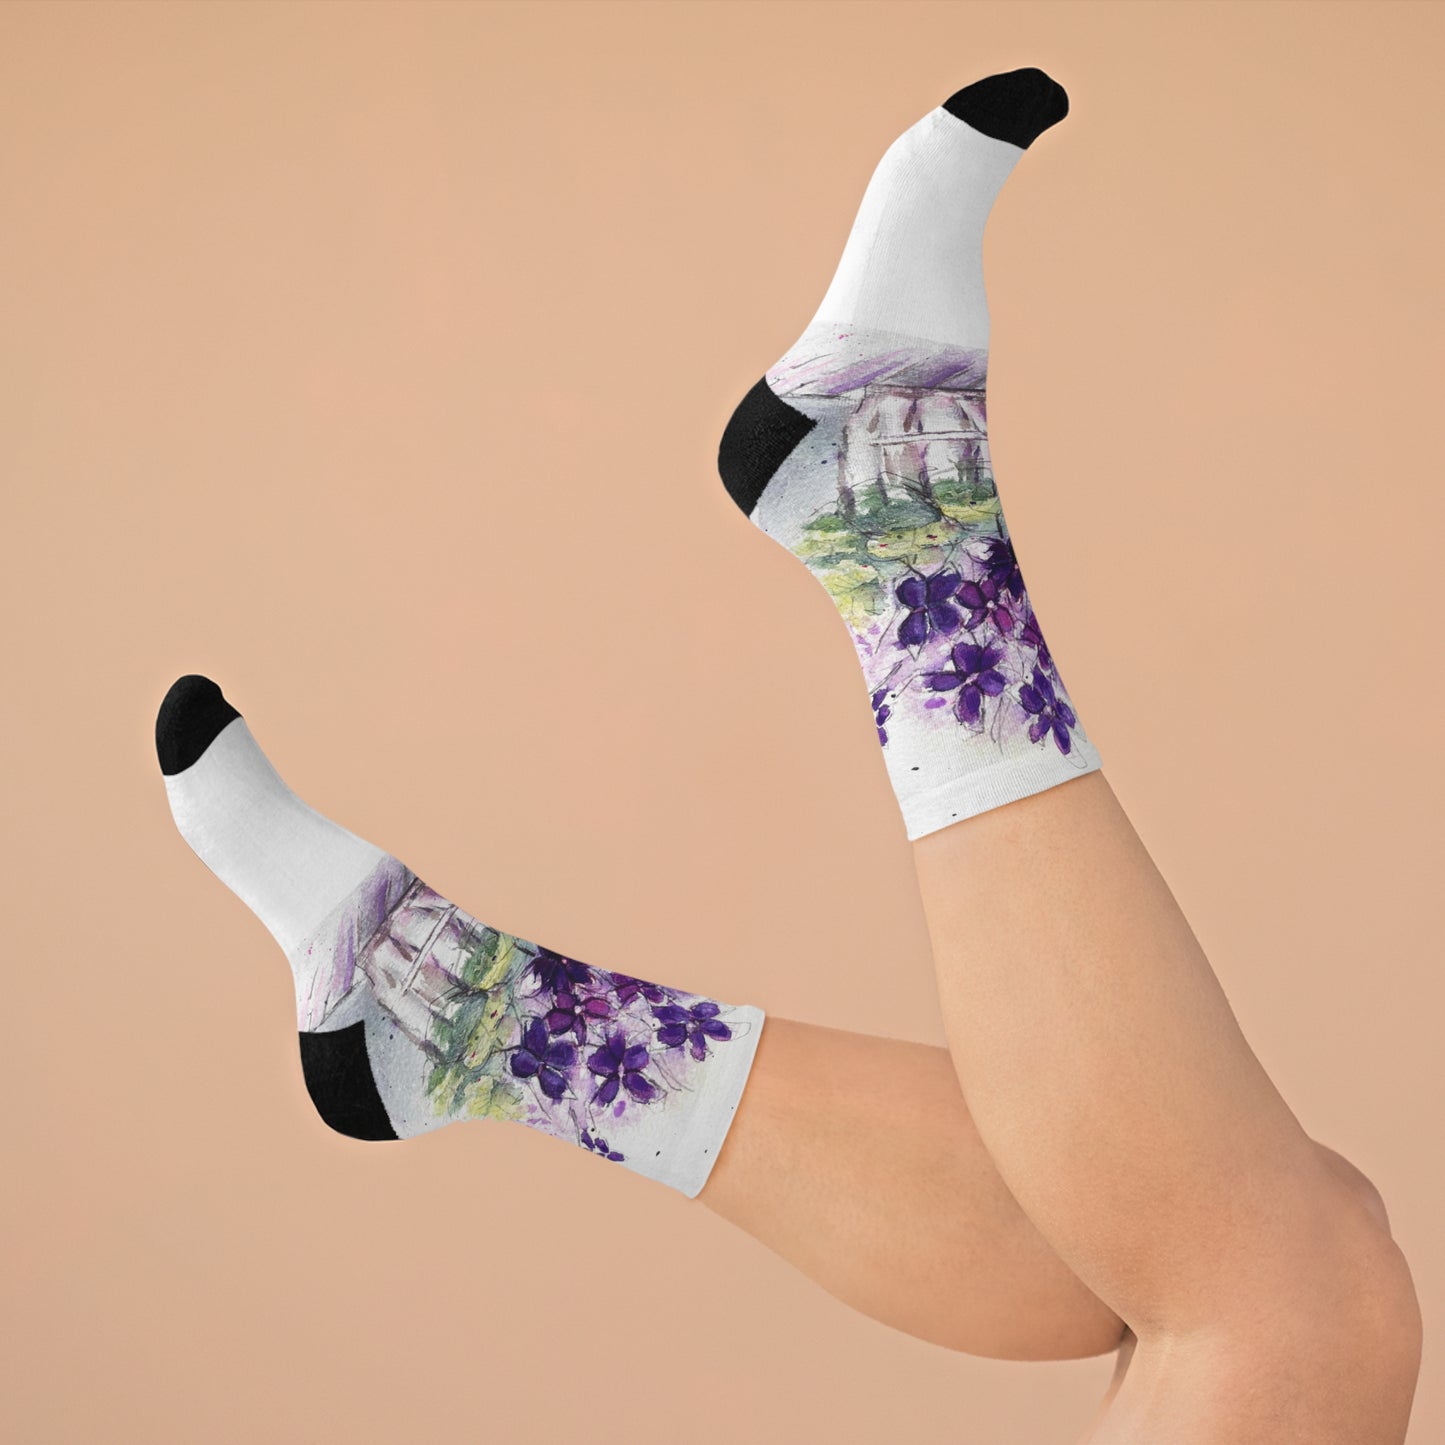 Purple Ivy Geraniums Socks